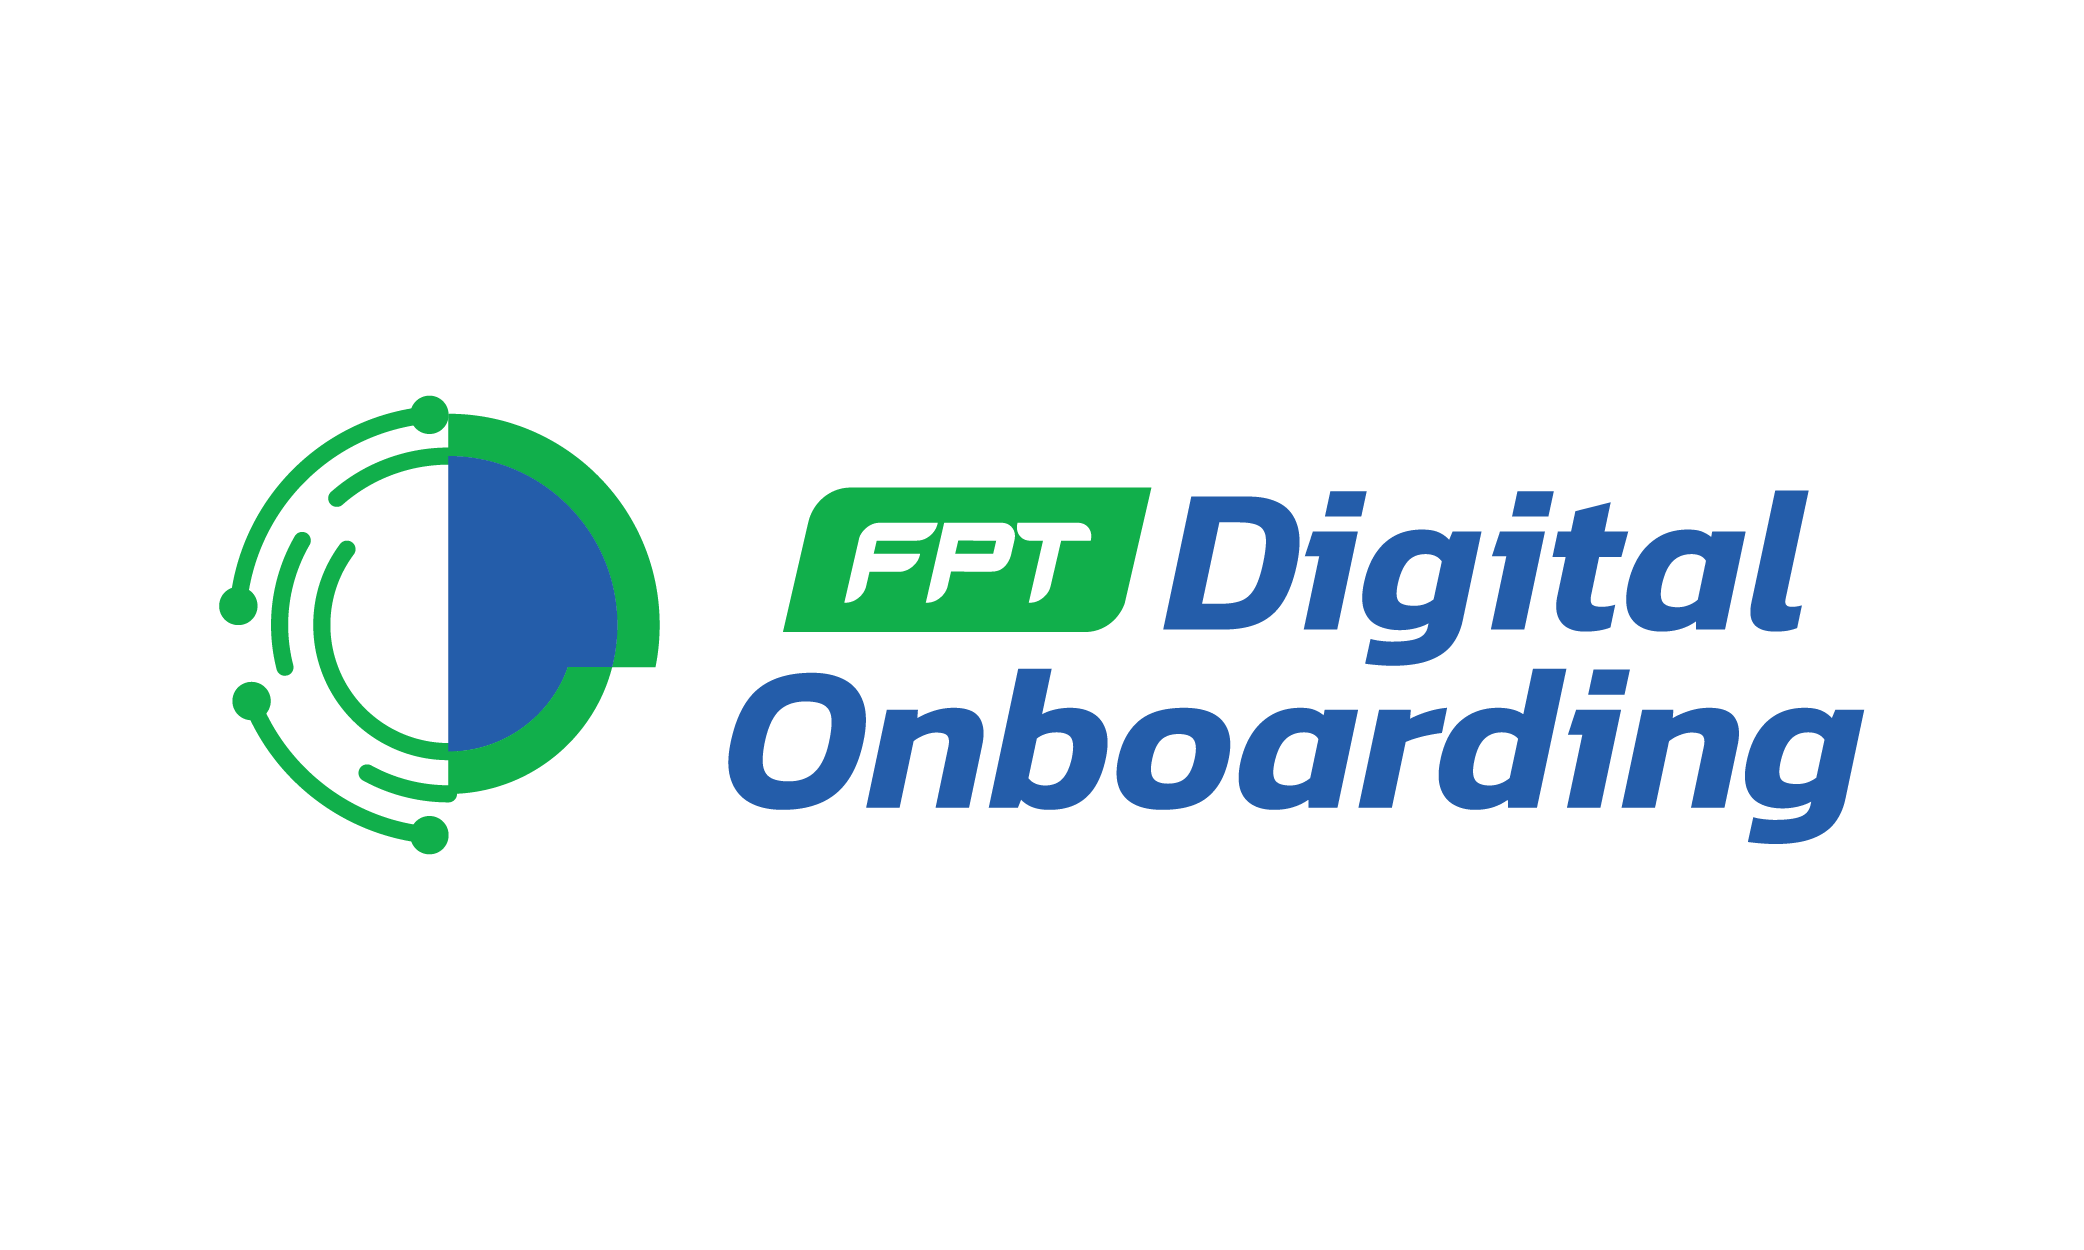 Số hóa quy trình đăng ký tài khoản và dịch vụ FPT Digital Onboarding